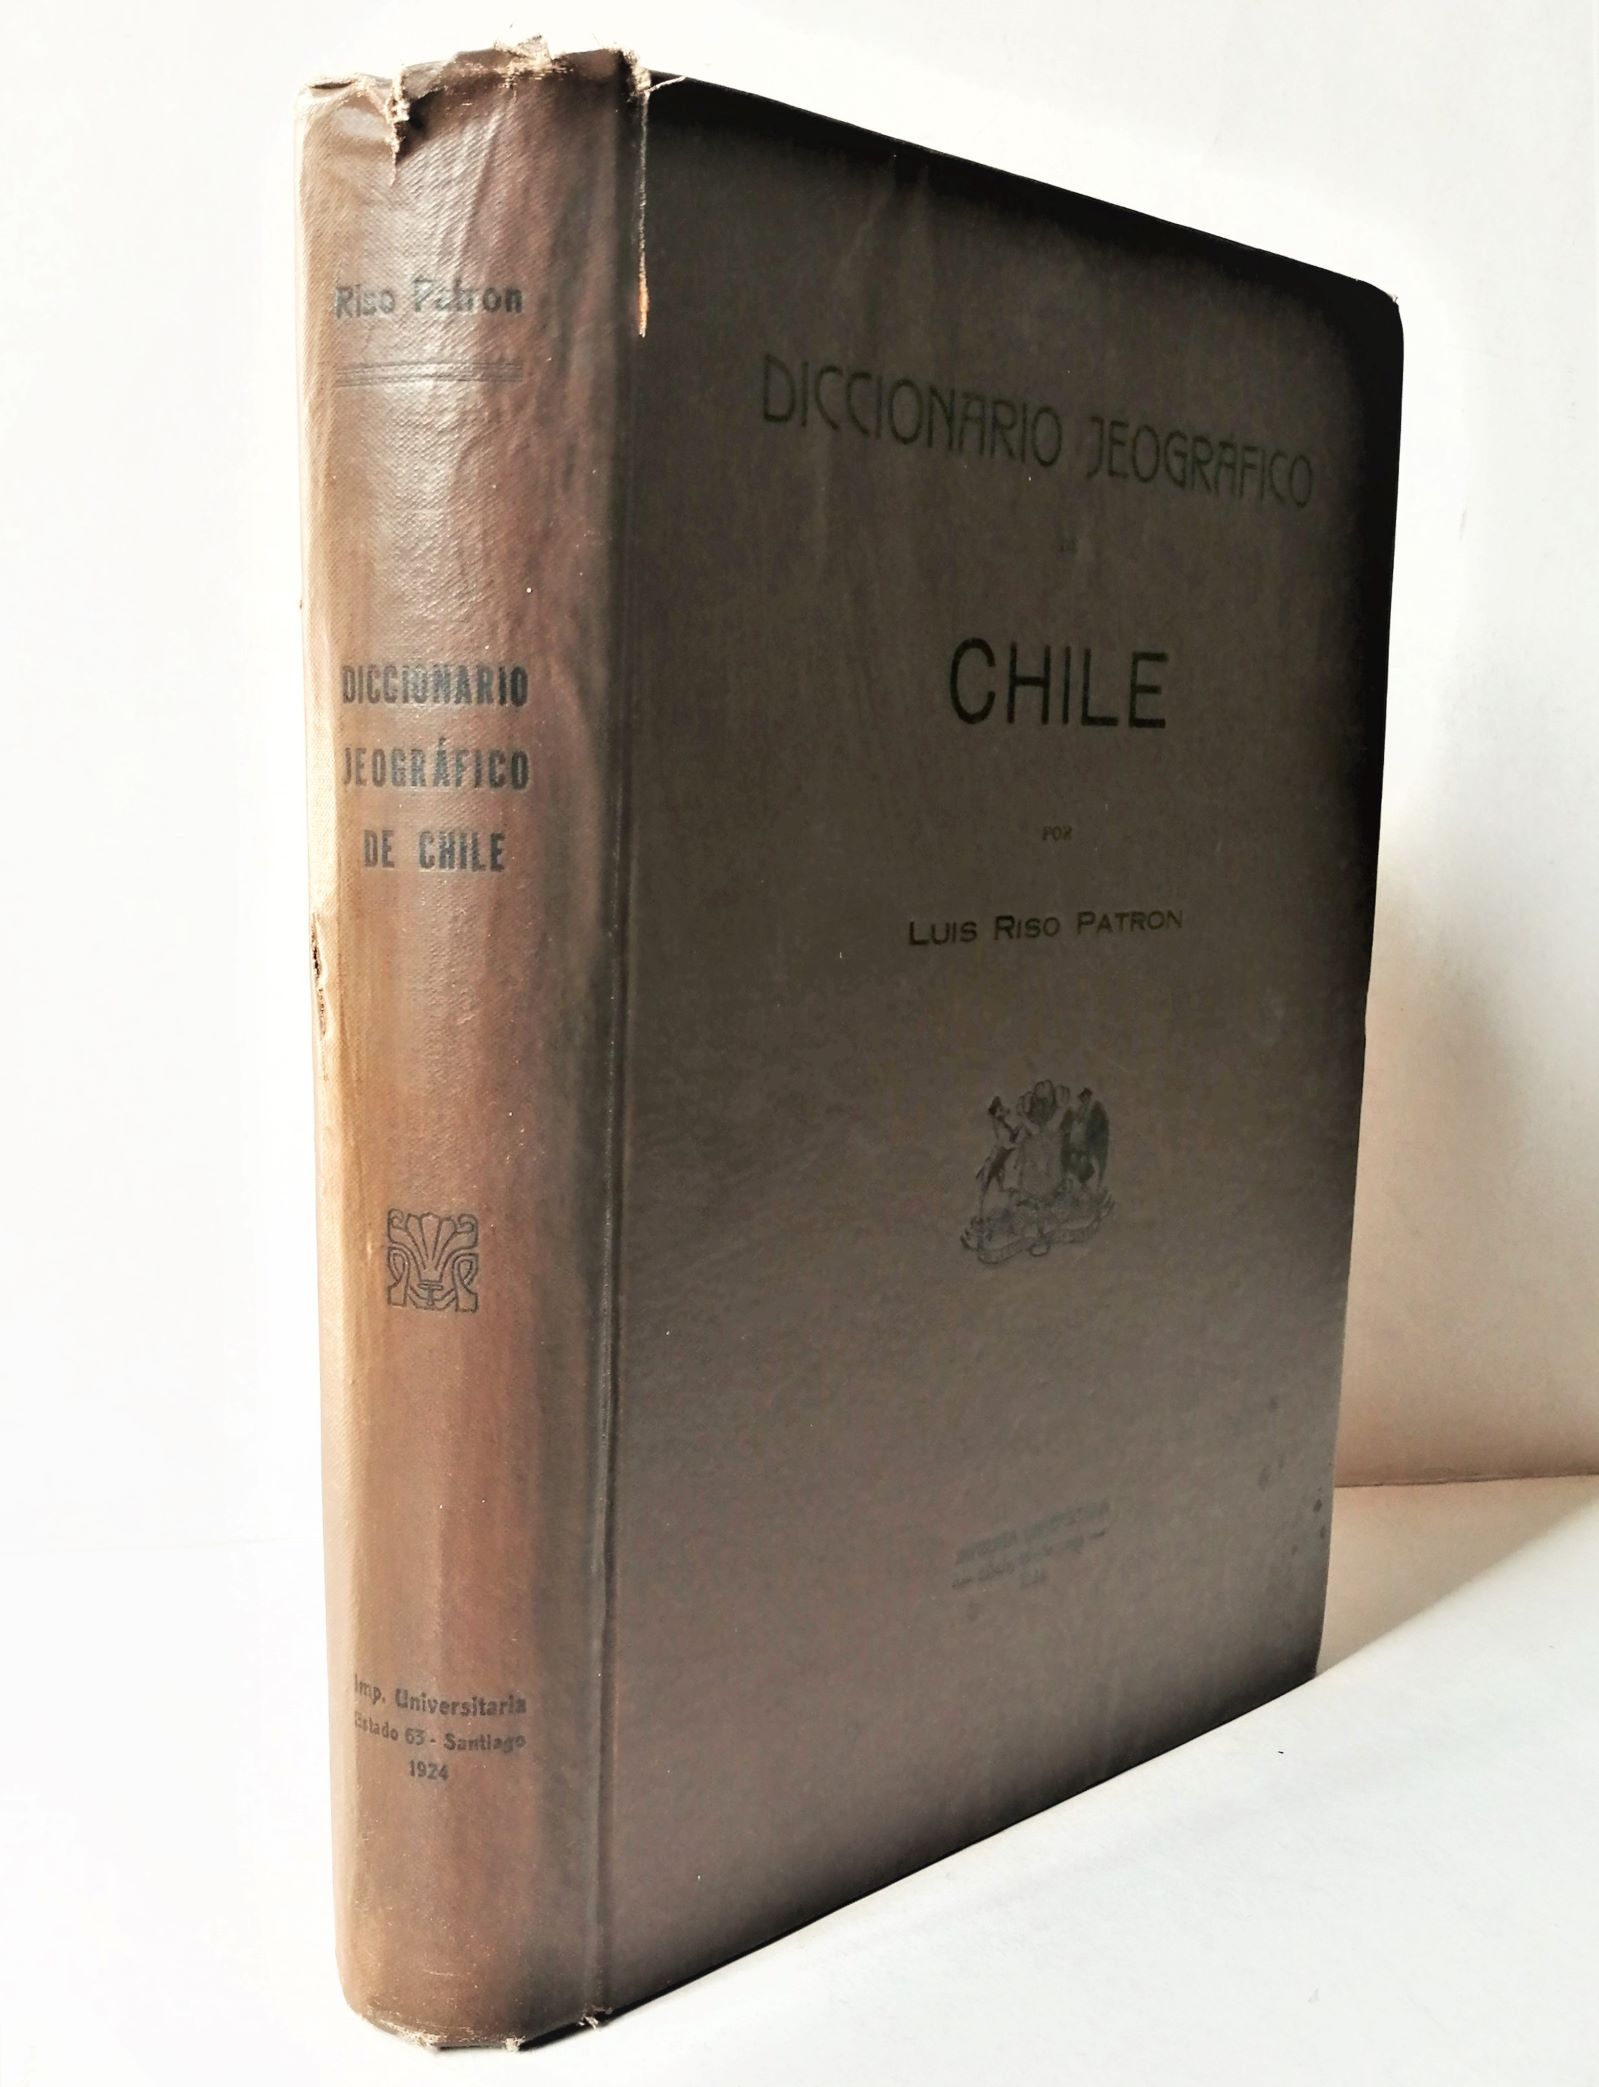 Luis Riso Patrón - Diccionario Jeográfico de Chile